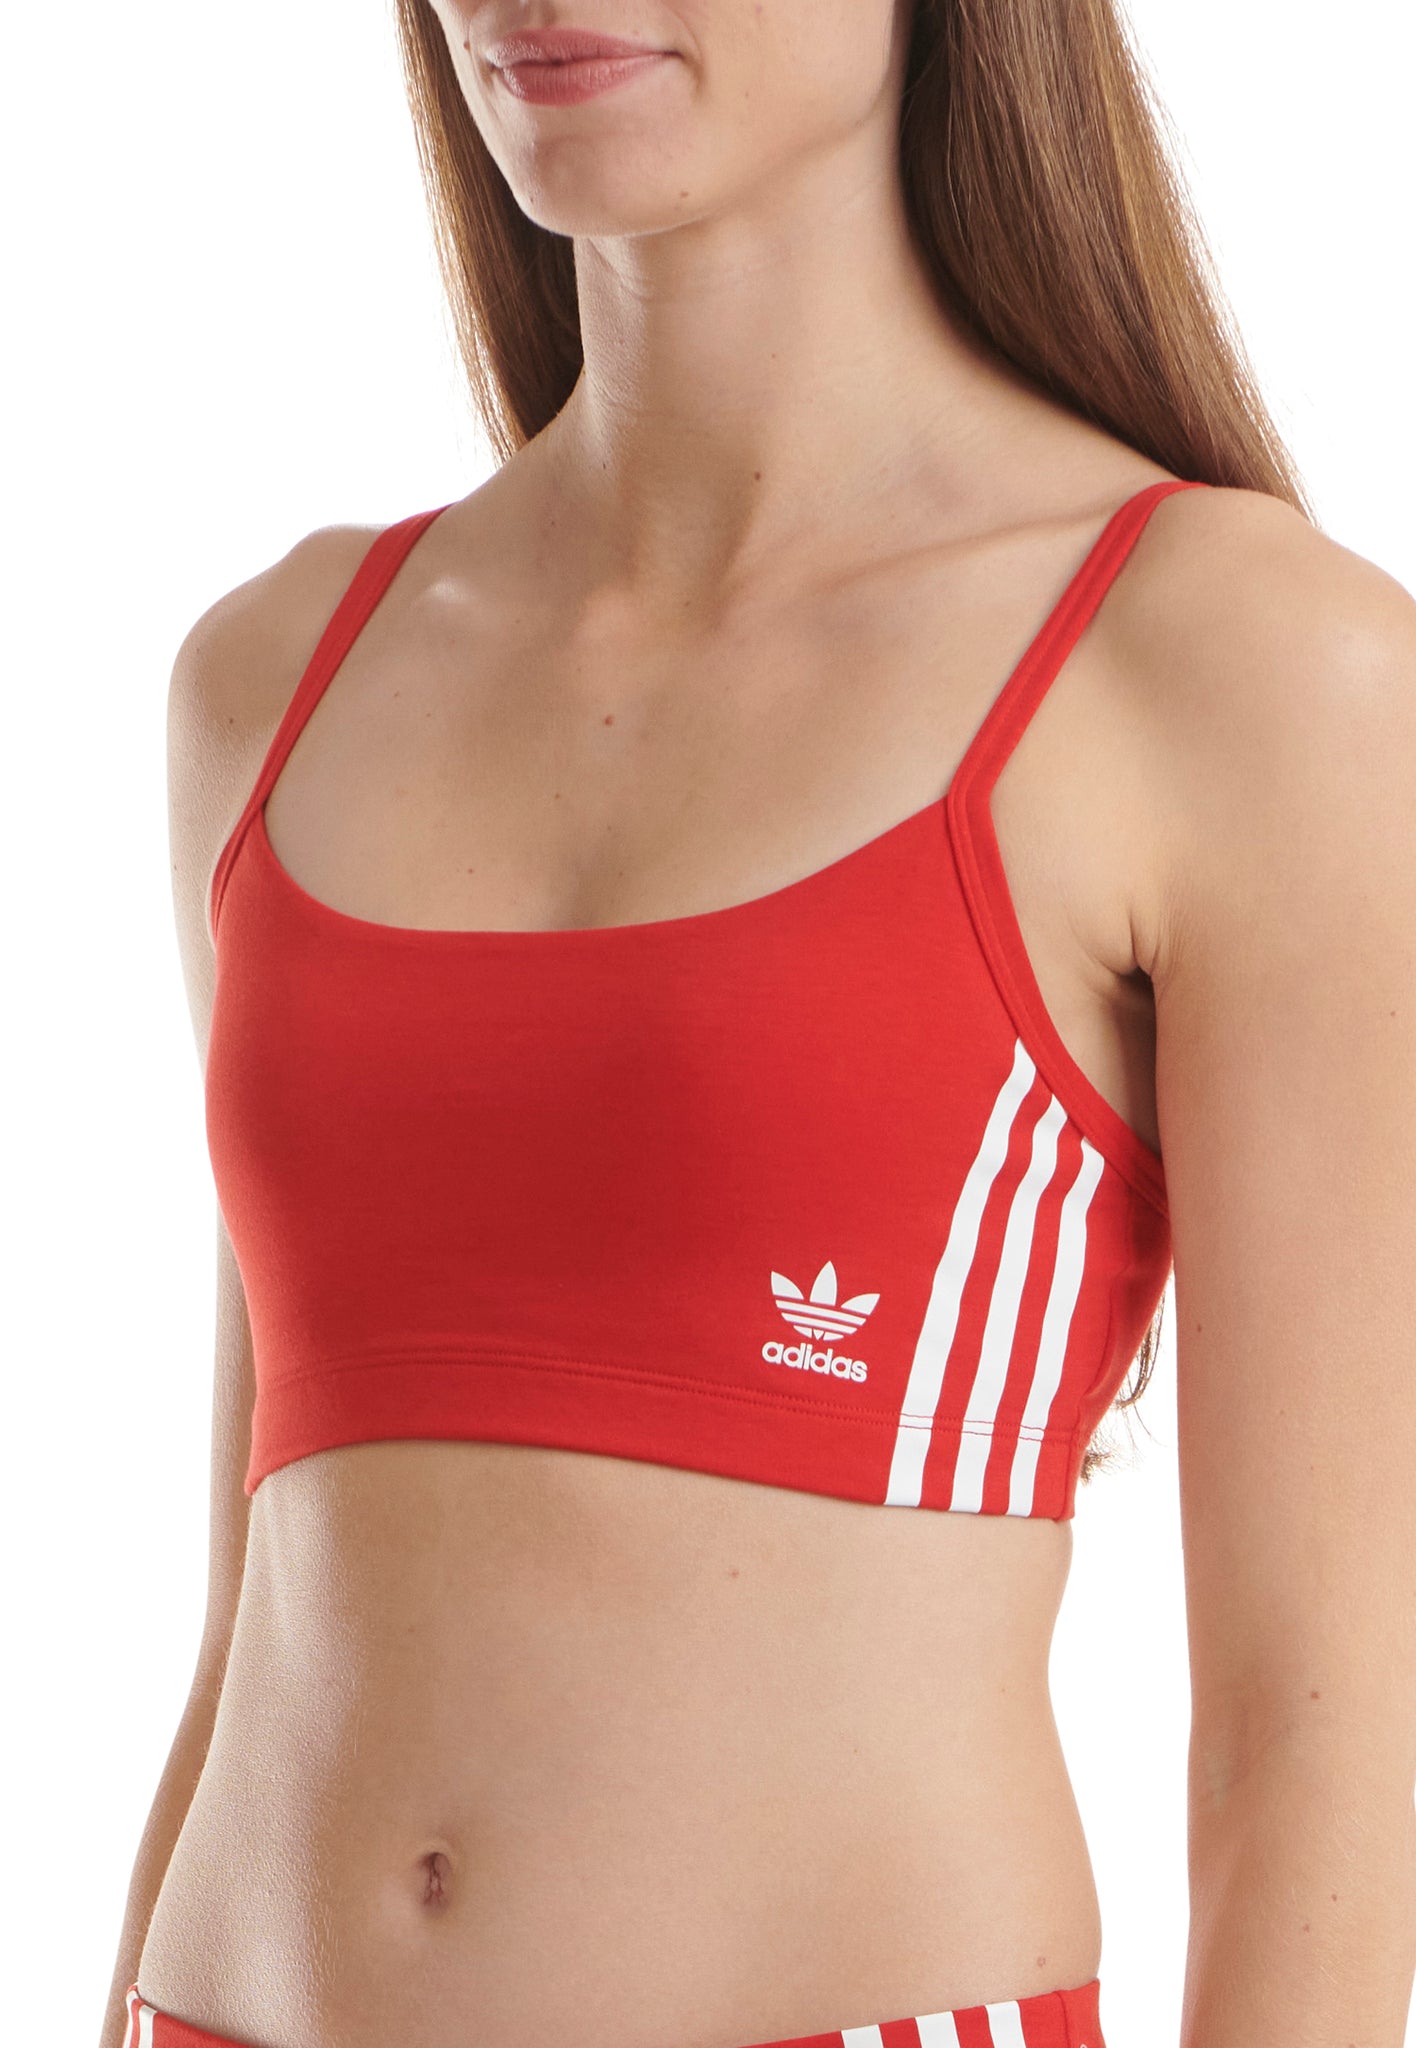 Adidas Sports Underwea Women Crop Bra Bust Holder, plain red